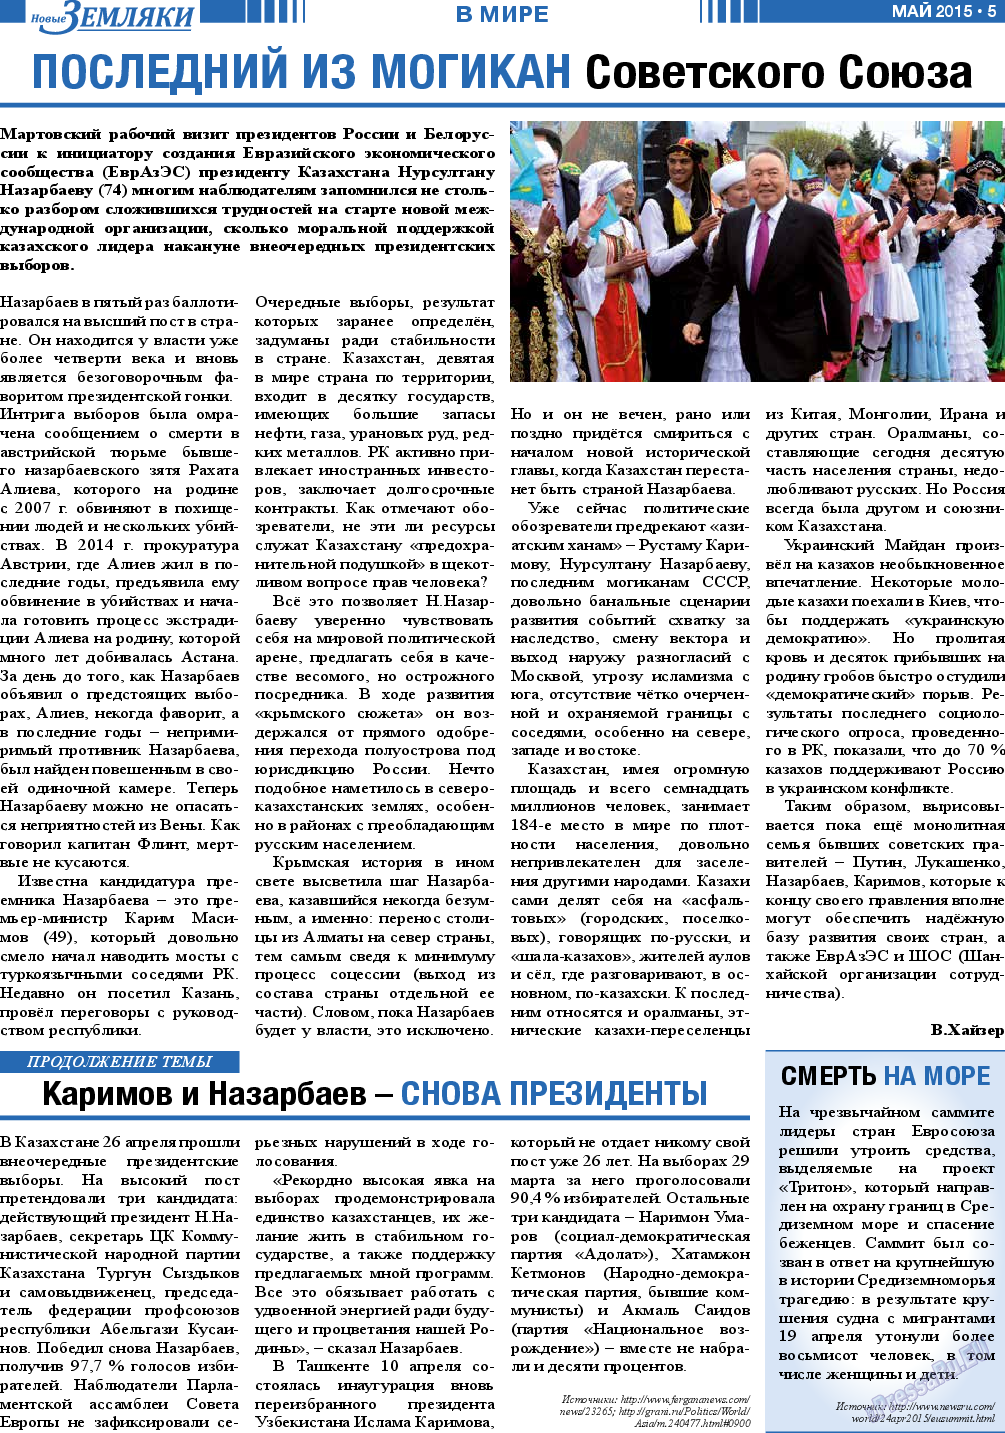 Новые Земляки, газета. 2015 №5 стр.5